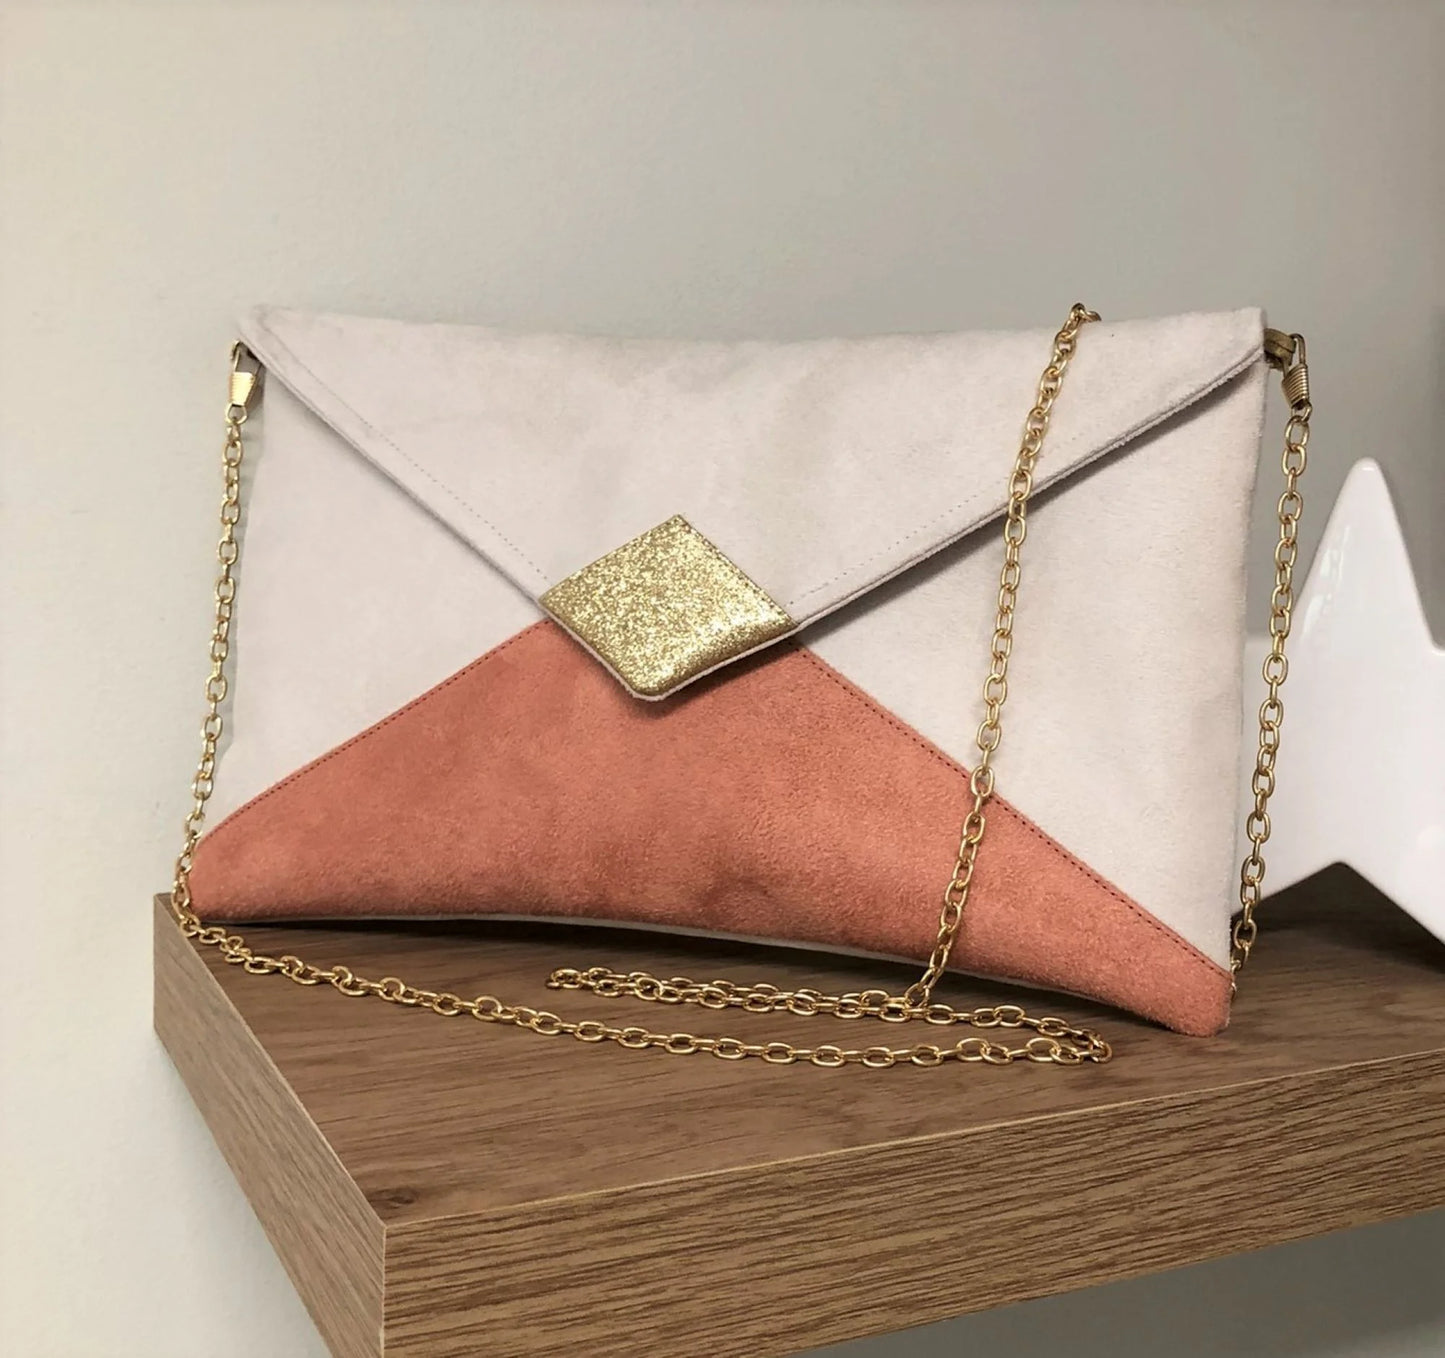 Le sac pochette Isa écru et rose saumon à paillettes dorées, avec chainette amovible.